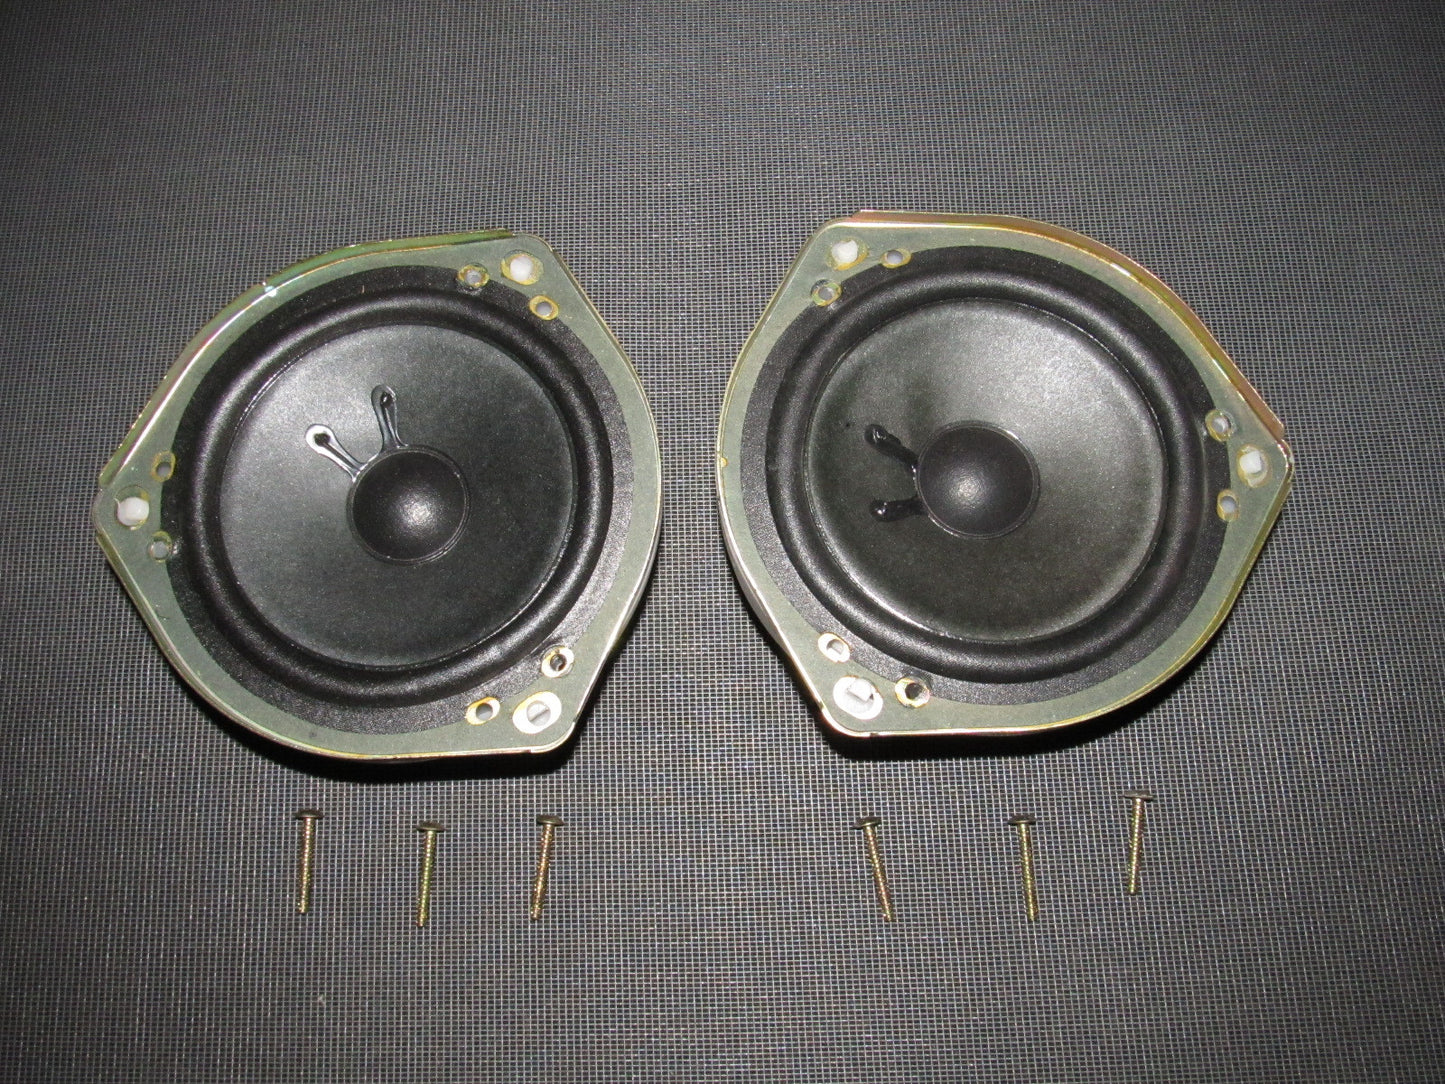 01 02 03 Acura CL OEM Bose Speaker - Front Set